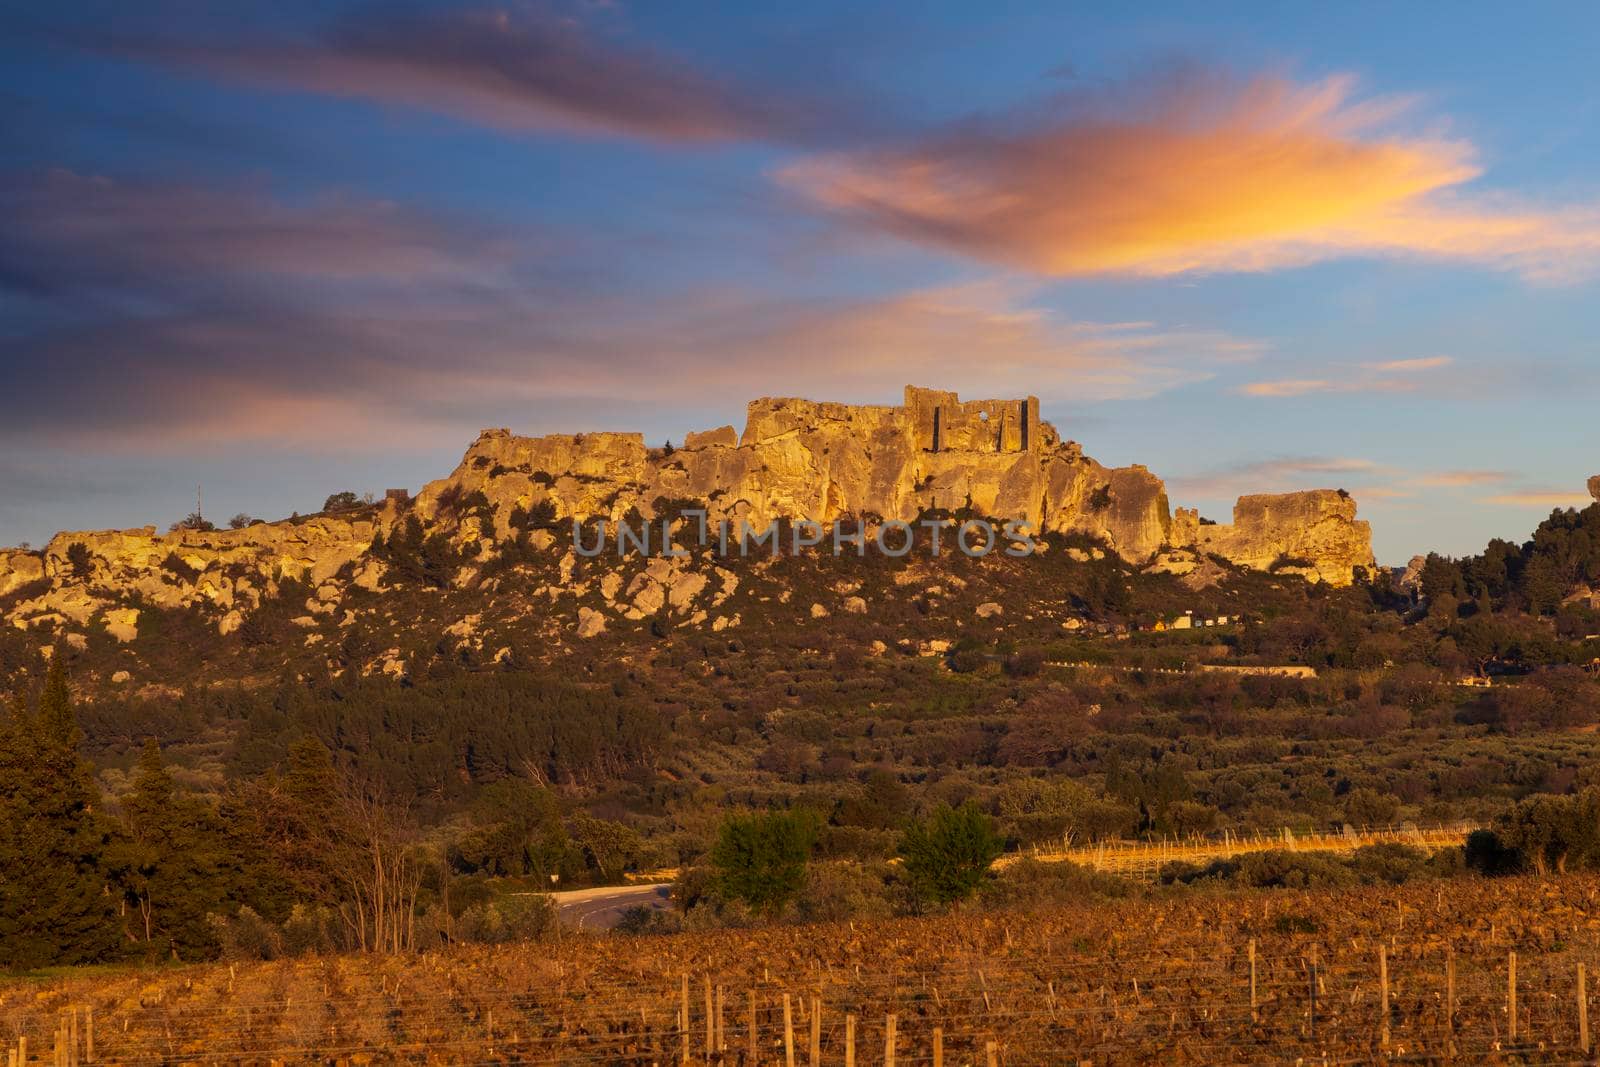 Medieval castle and village, Les Baux-de-Provence, Alpilles mountains, Provence, France